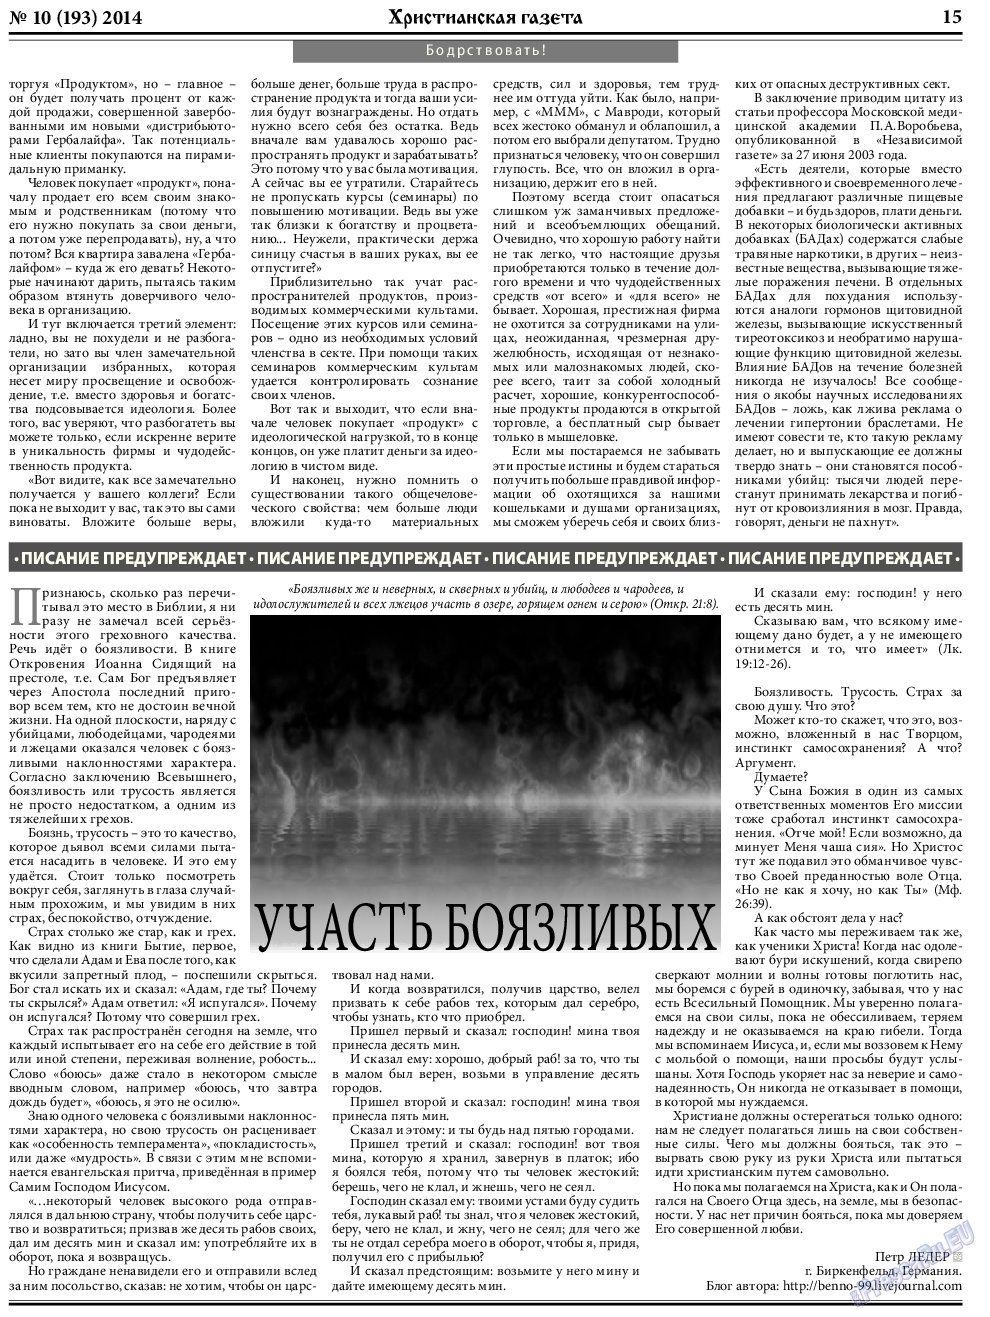 Христианская газета, газета. 2014 №10 стр.23